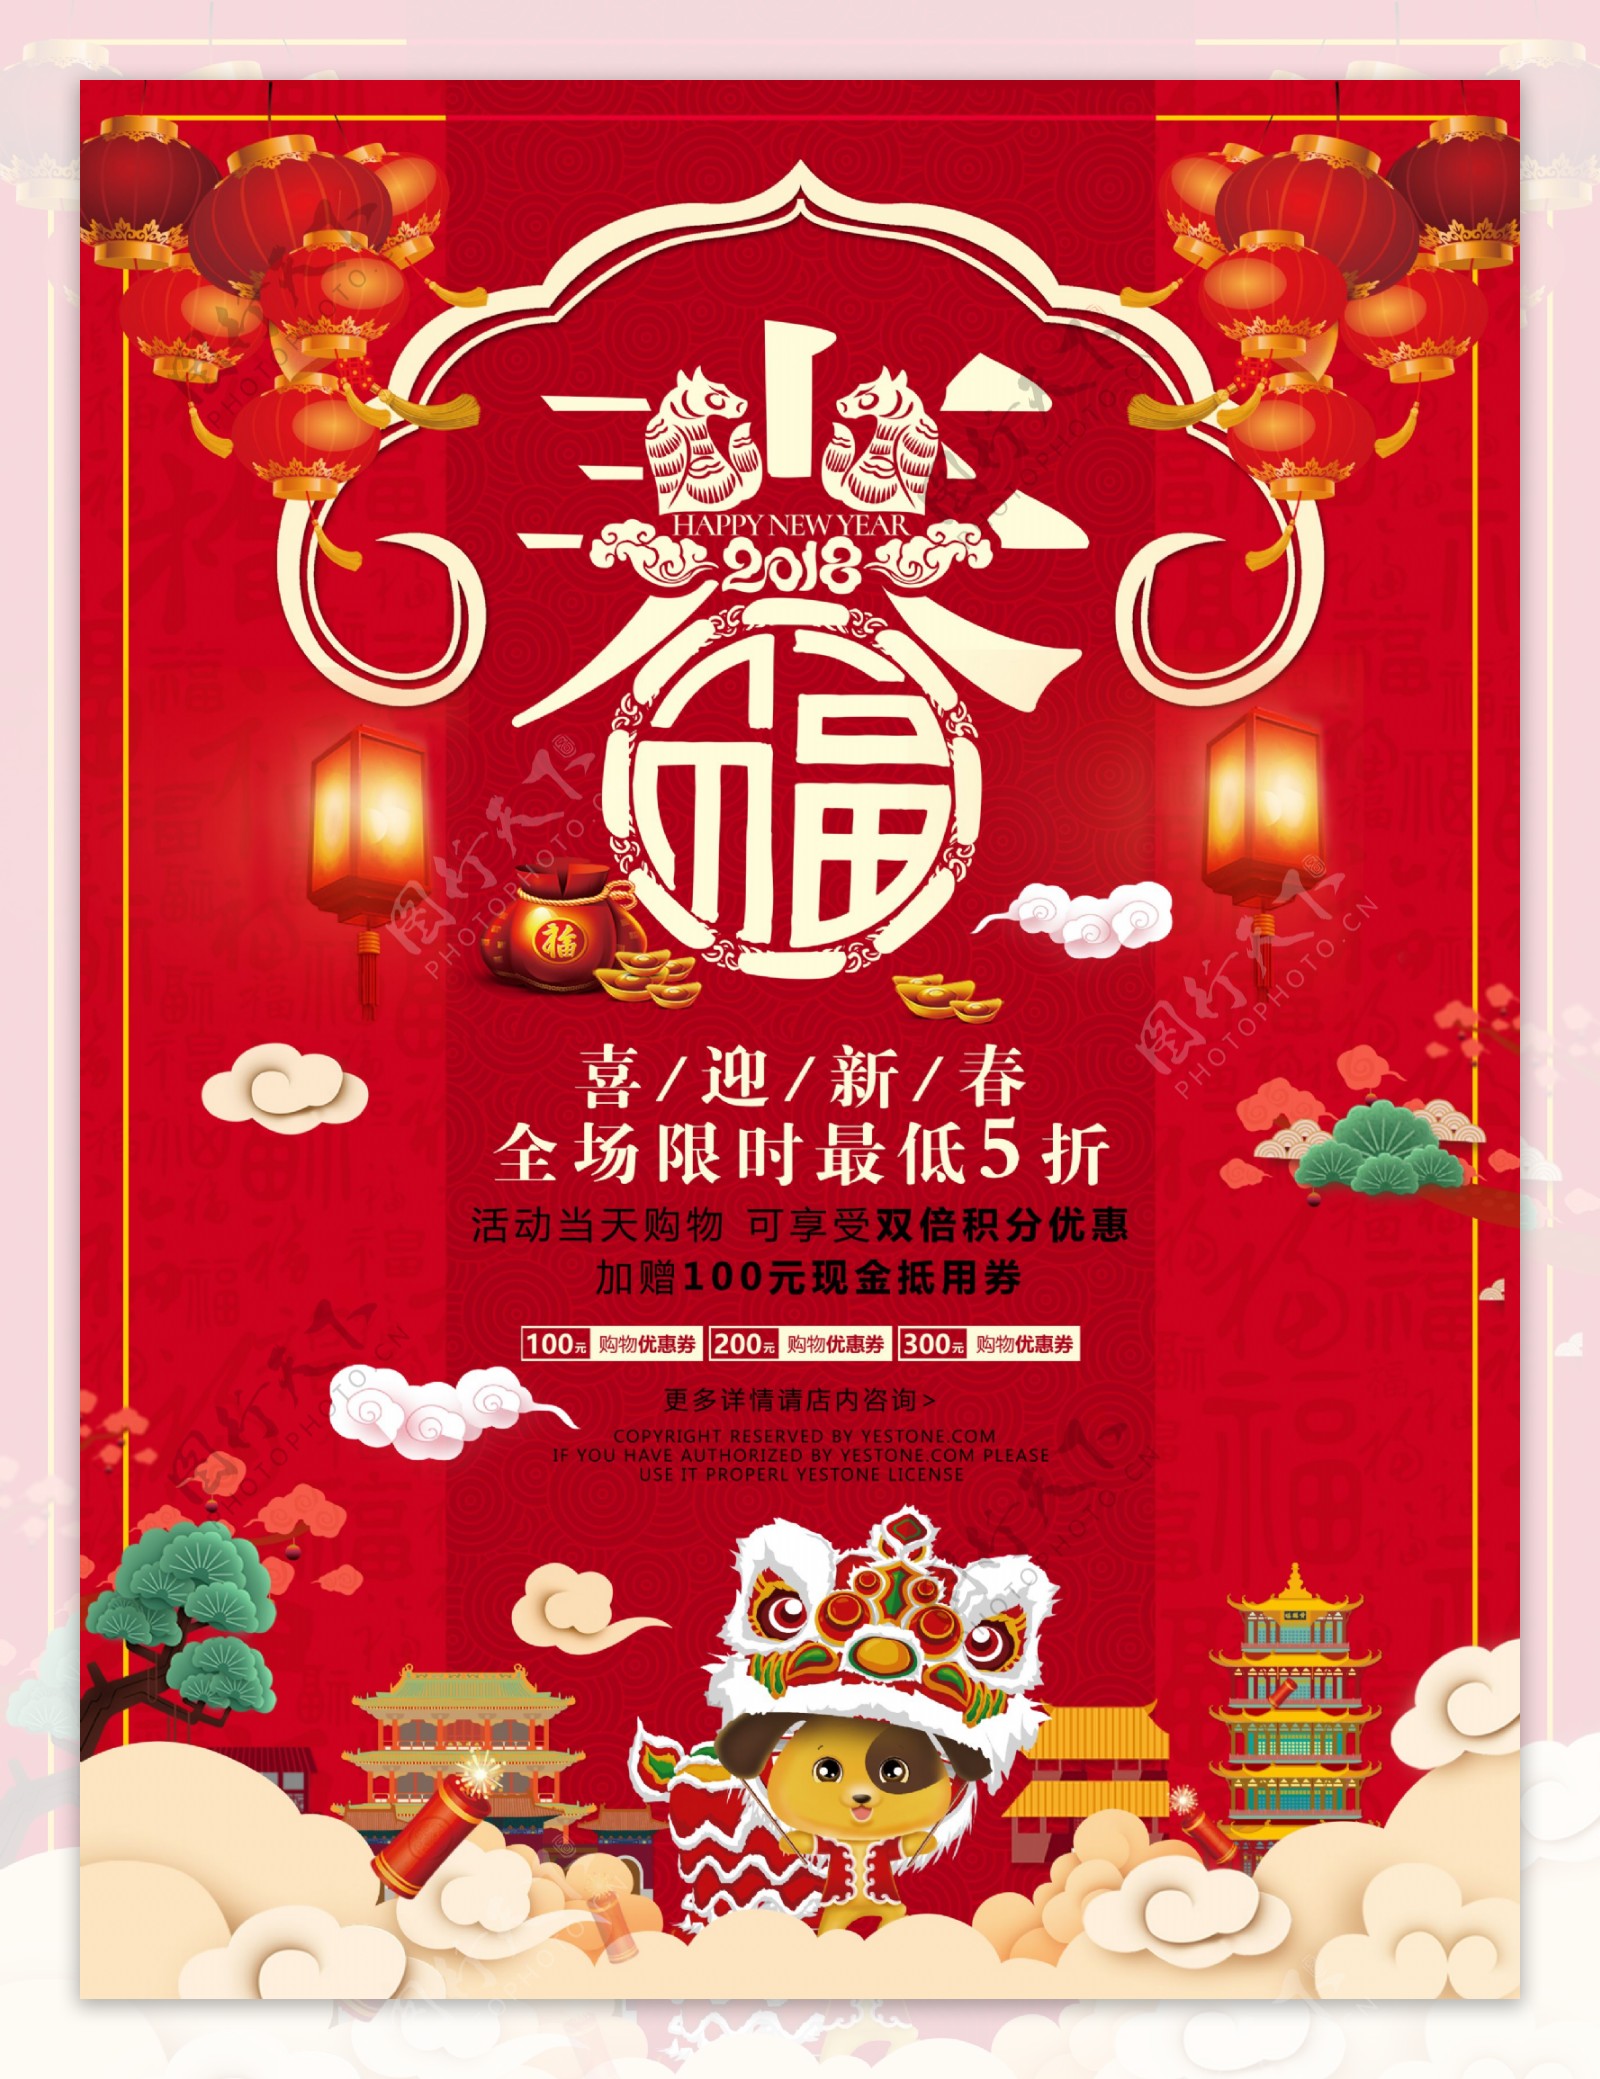 喜迎新春节日宣传海报